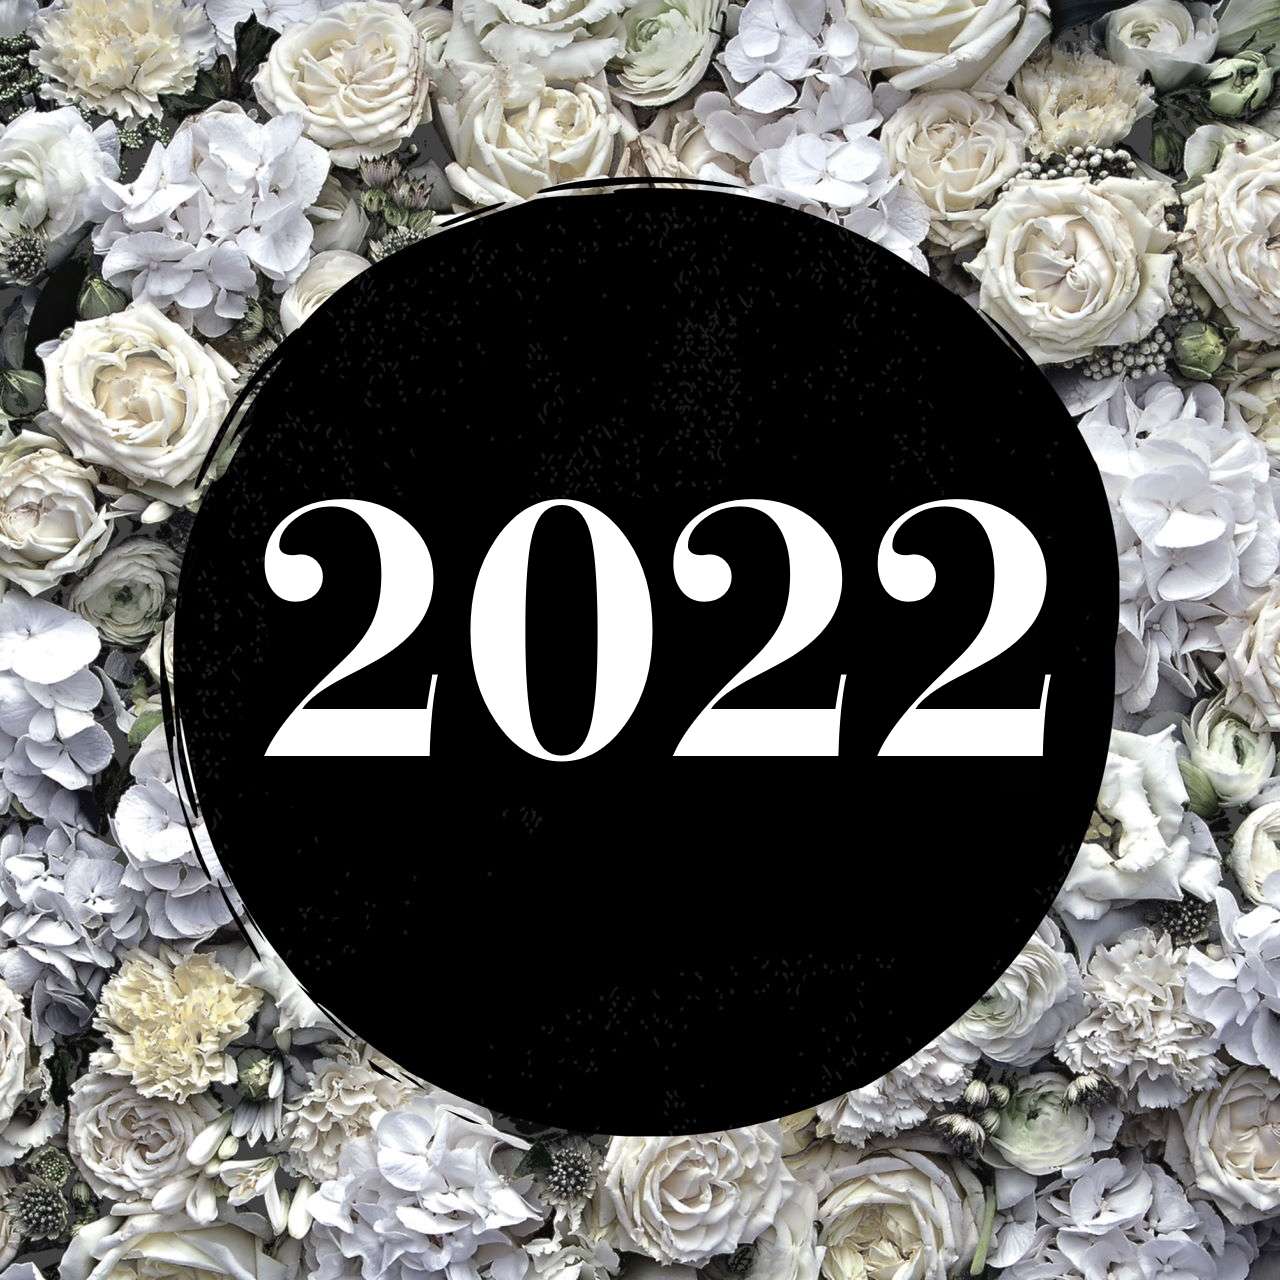 Giornata del Profumo 2022 - Accademia del profumo